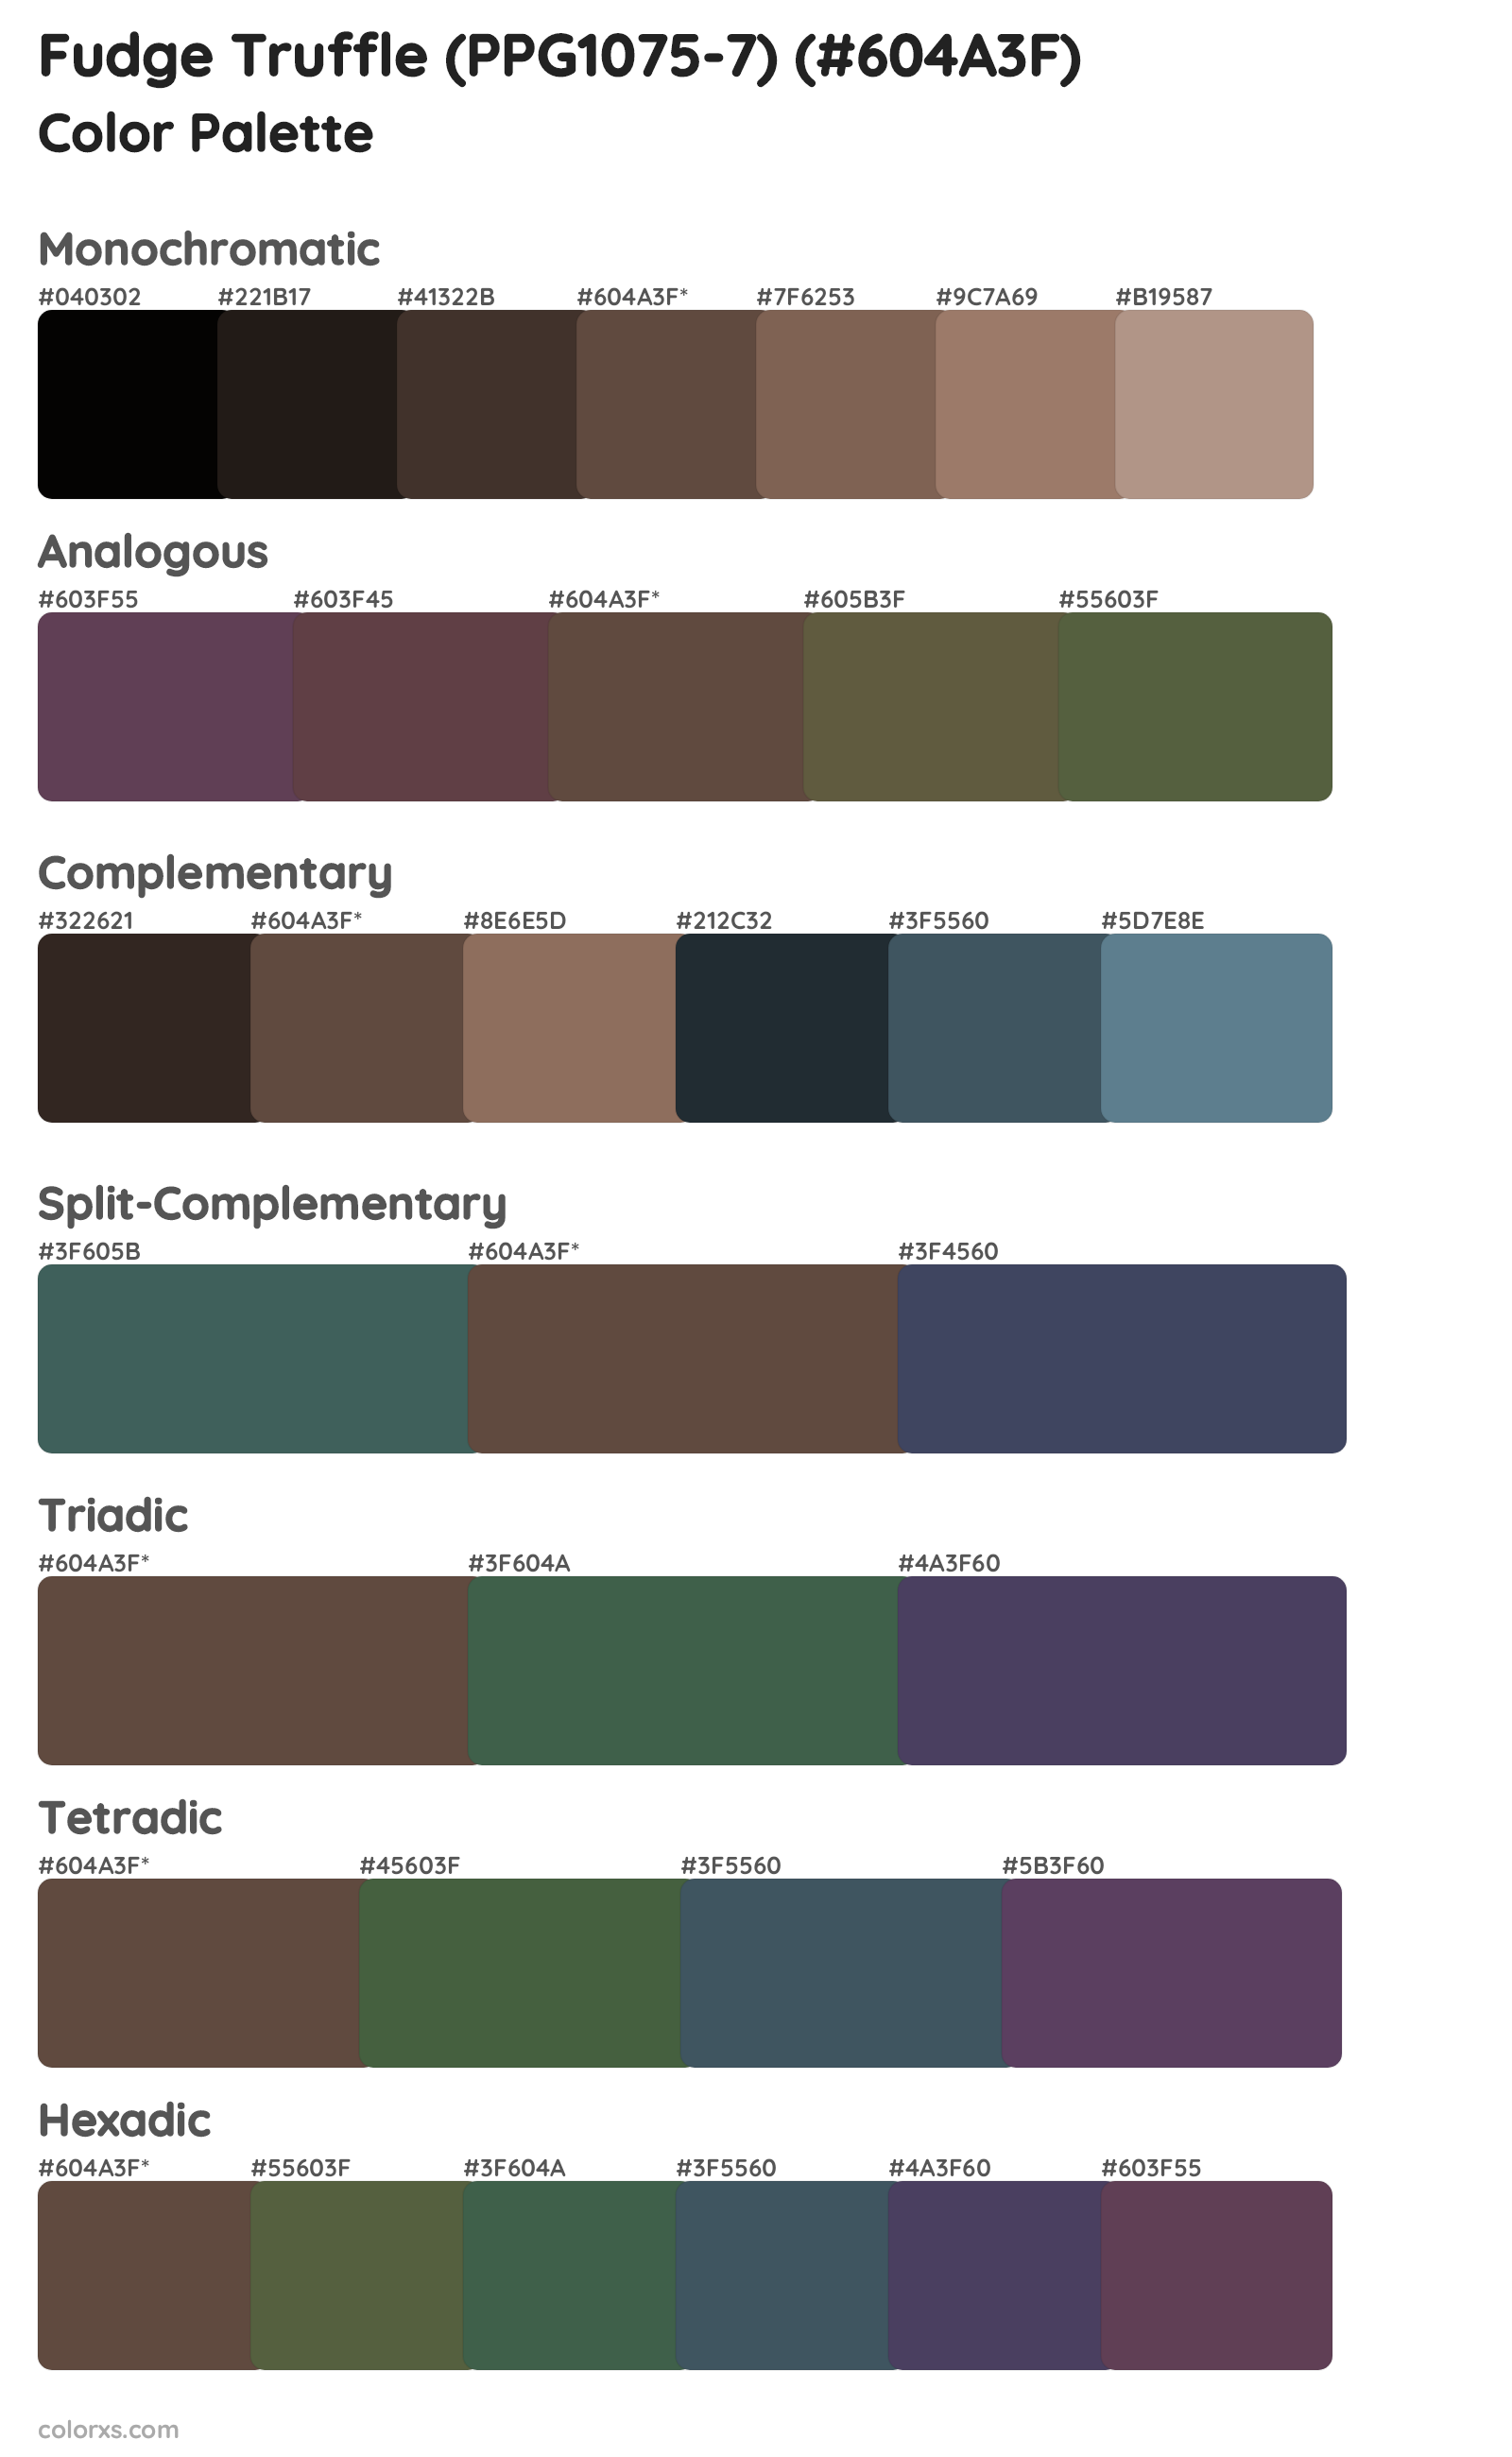 Fudge Truffle (PPG1075-7) Color Scheme Palettes